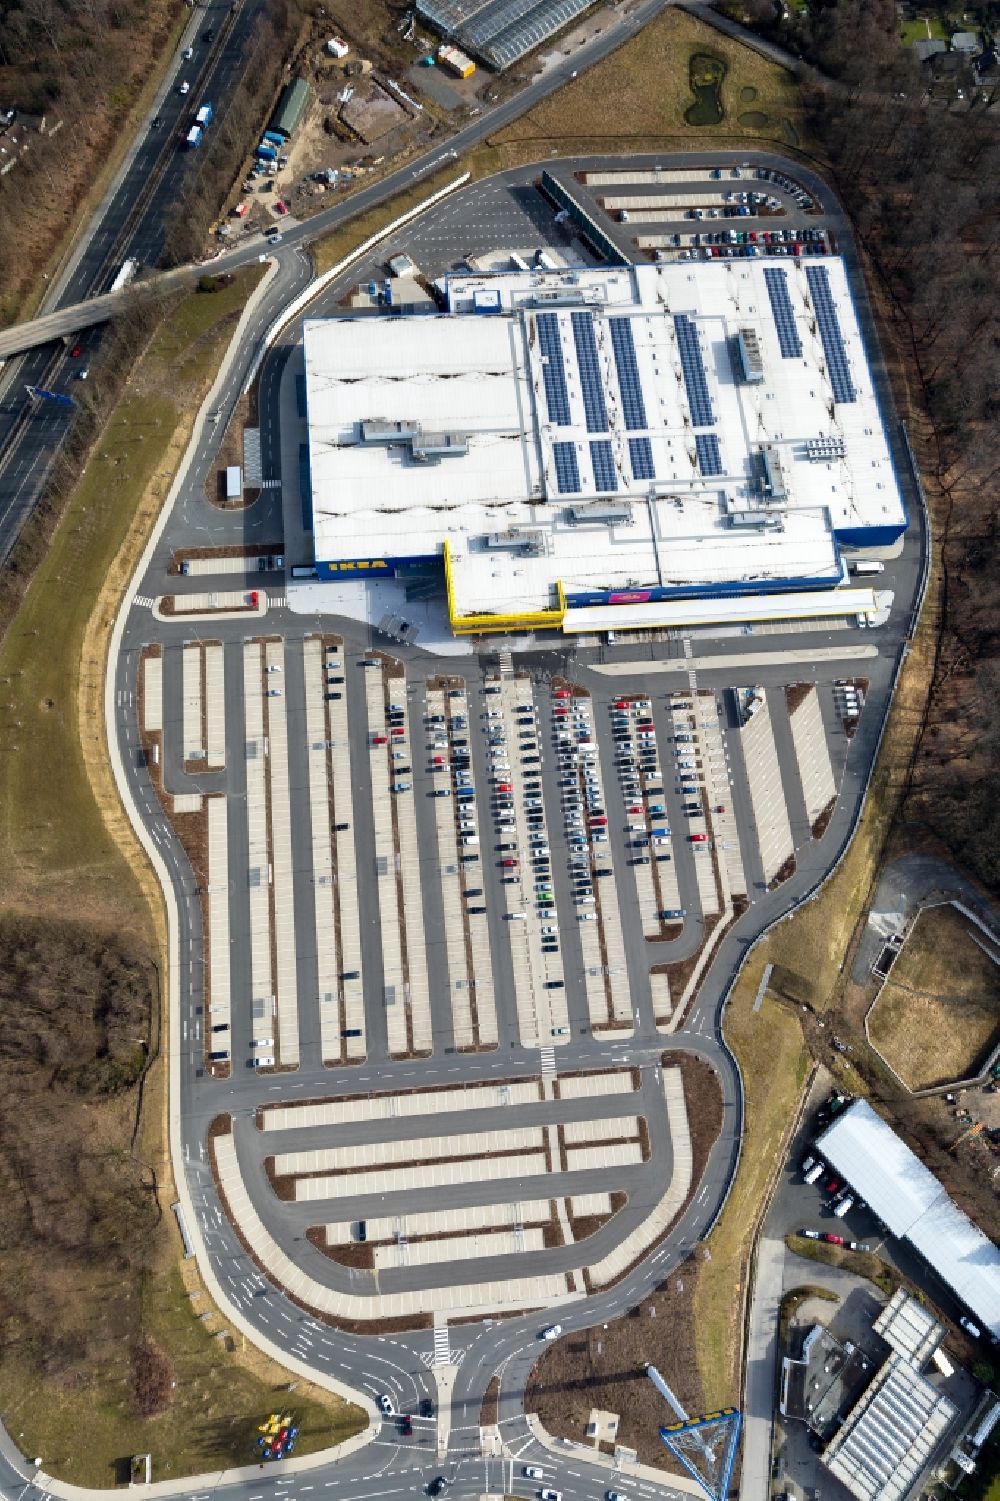 Luftbild Wuppertal - Gebäude des Einrichtungshaus - Möbelmarkt der IKEA Möbel & Einrichtungshaus Wuppertal im Bundesland Nordrhein-Westfalen, Deutschland